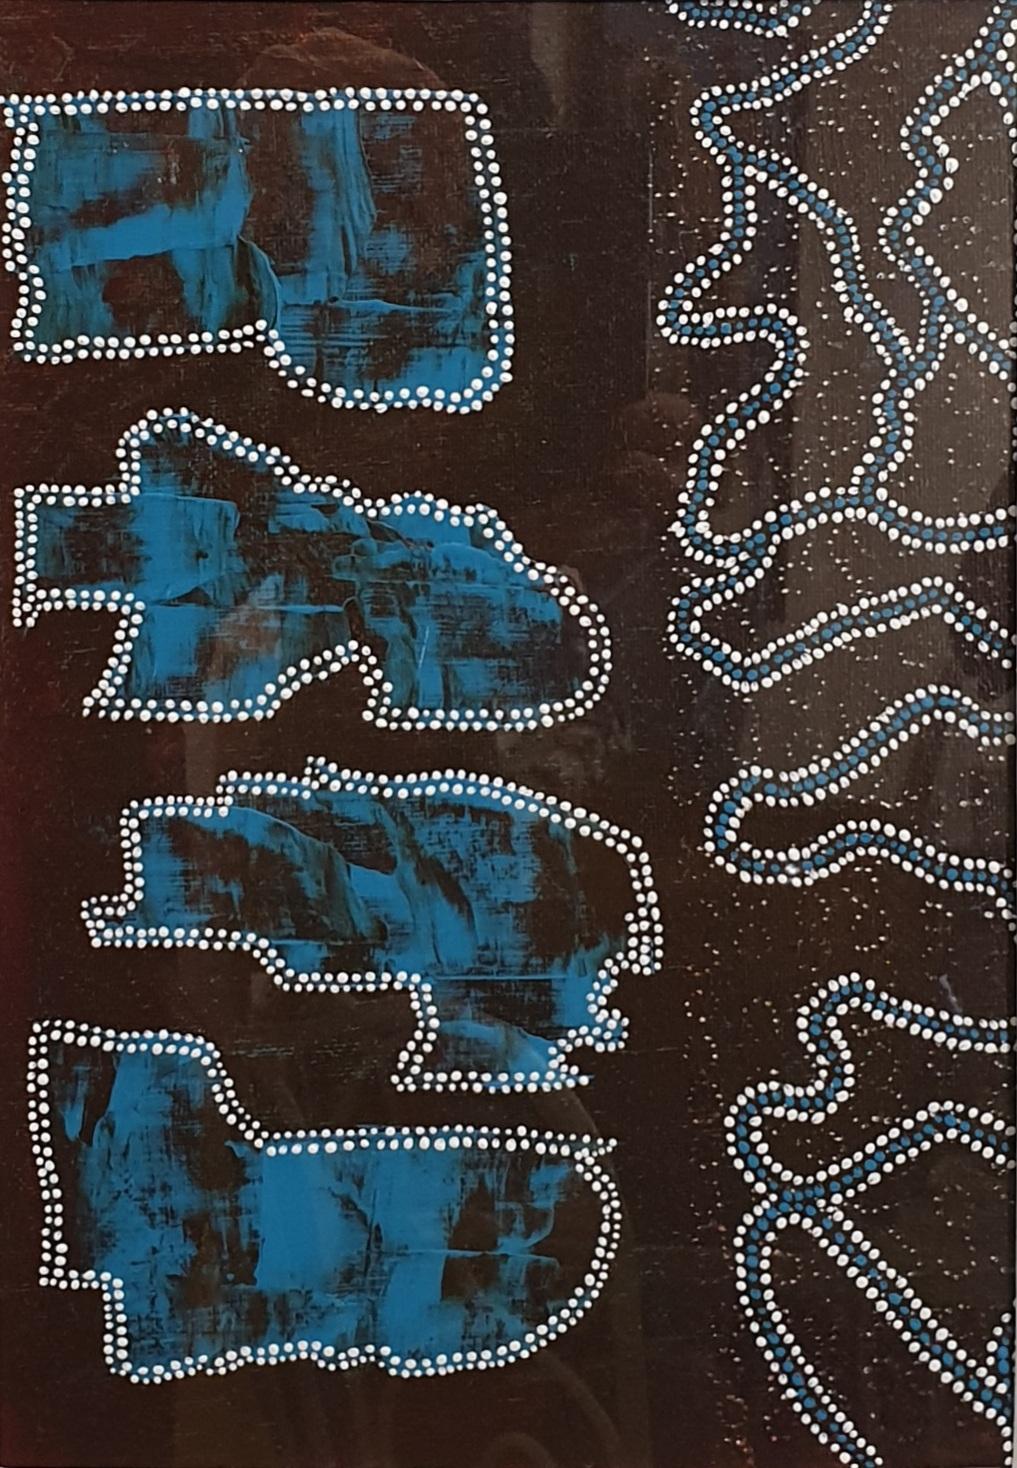 Zeitgenössisch von der Aborigine inspirierte abstrakte Skulptur. – Painting von Menno Modderman